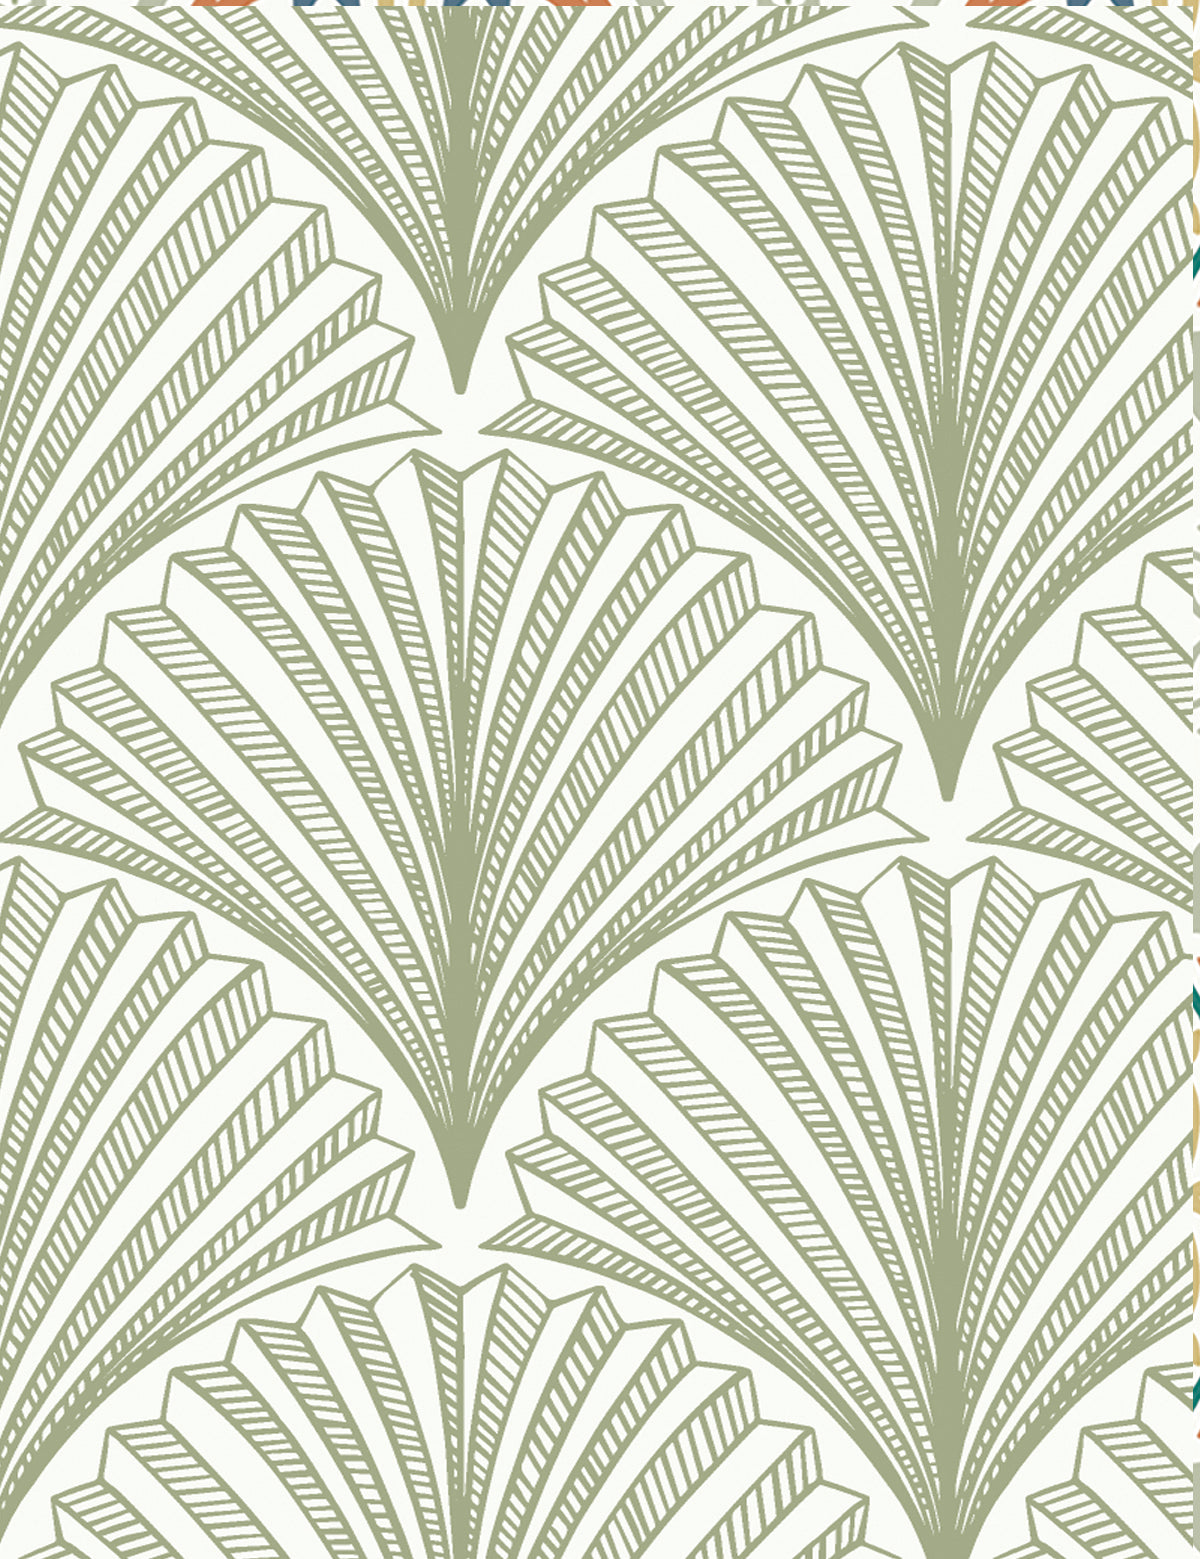 Tropical Fan Wallpaper Sheets by Filasophie